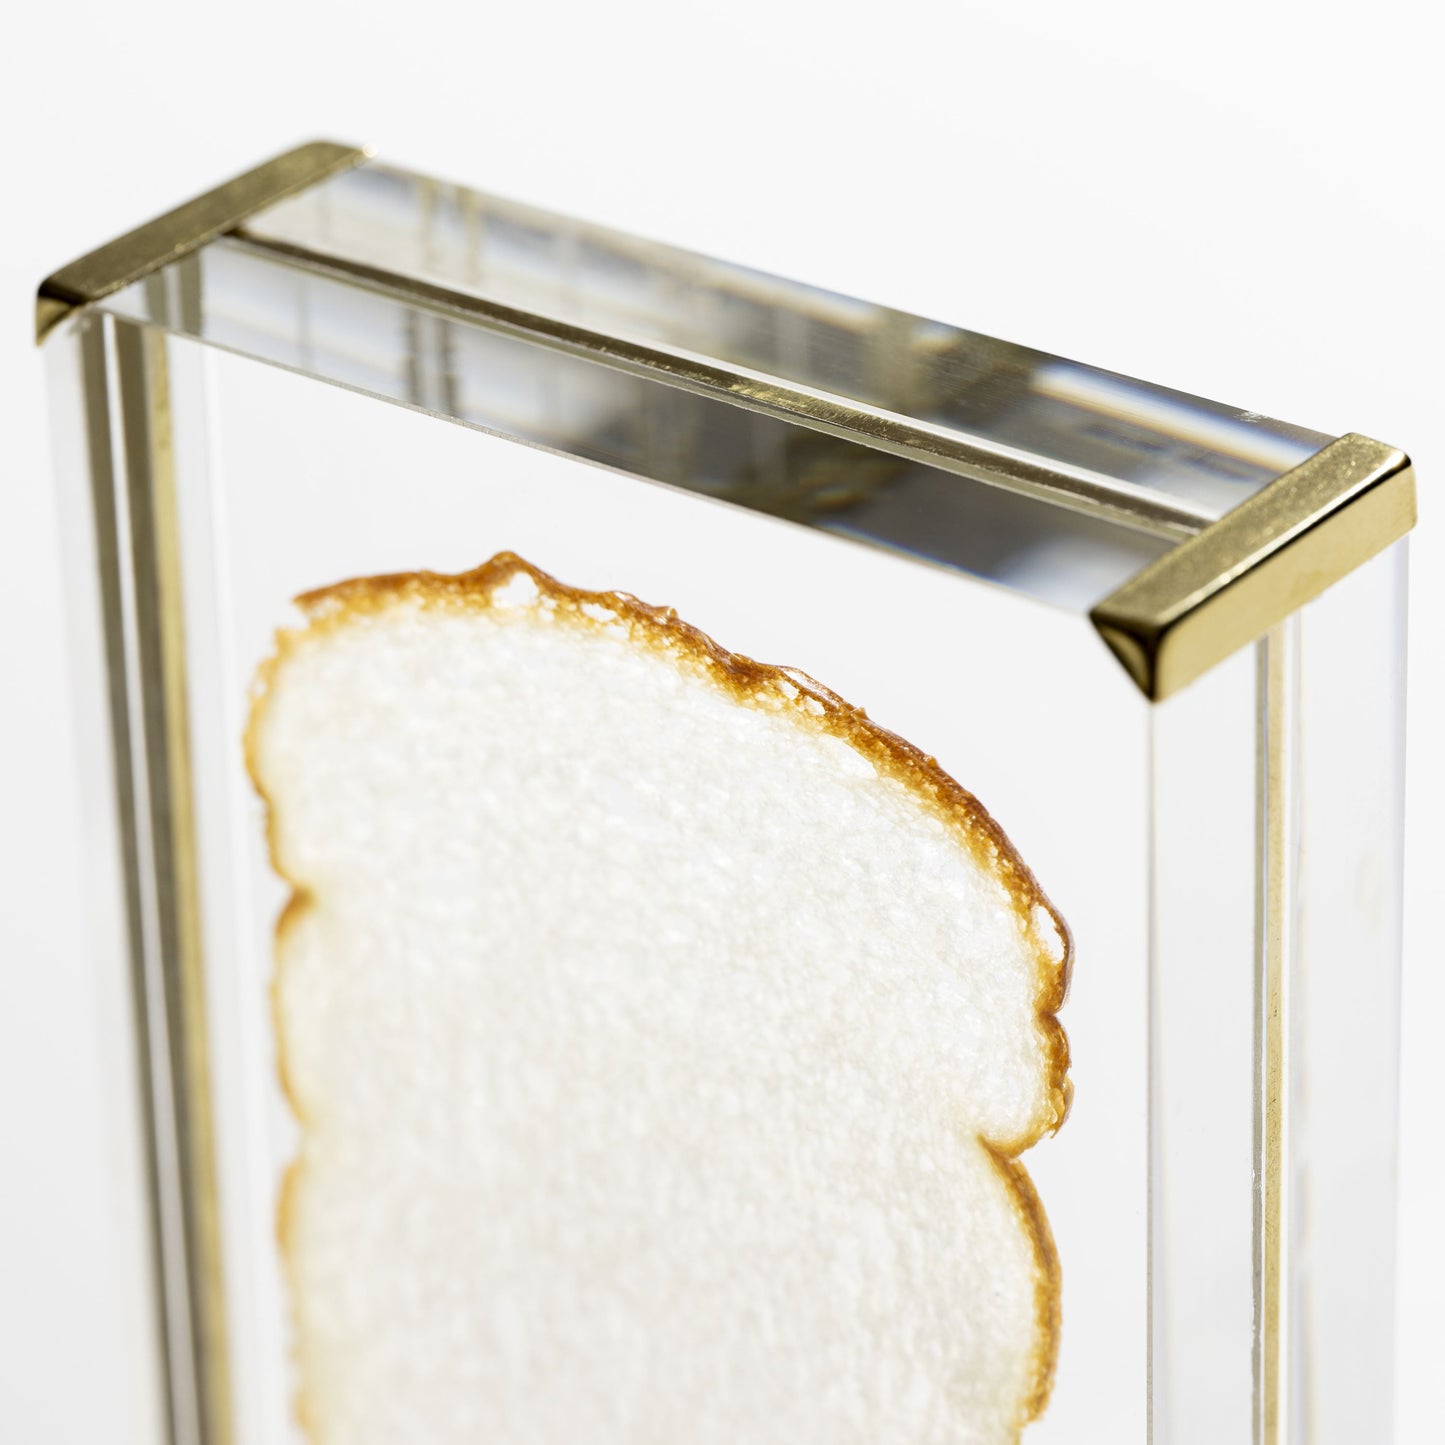 TOSTADA EN LONCHAS - tostada de objeto de pan